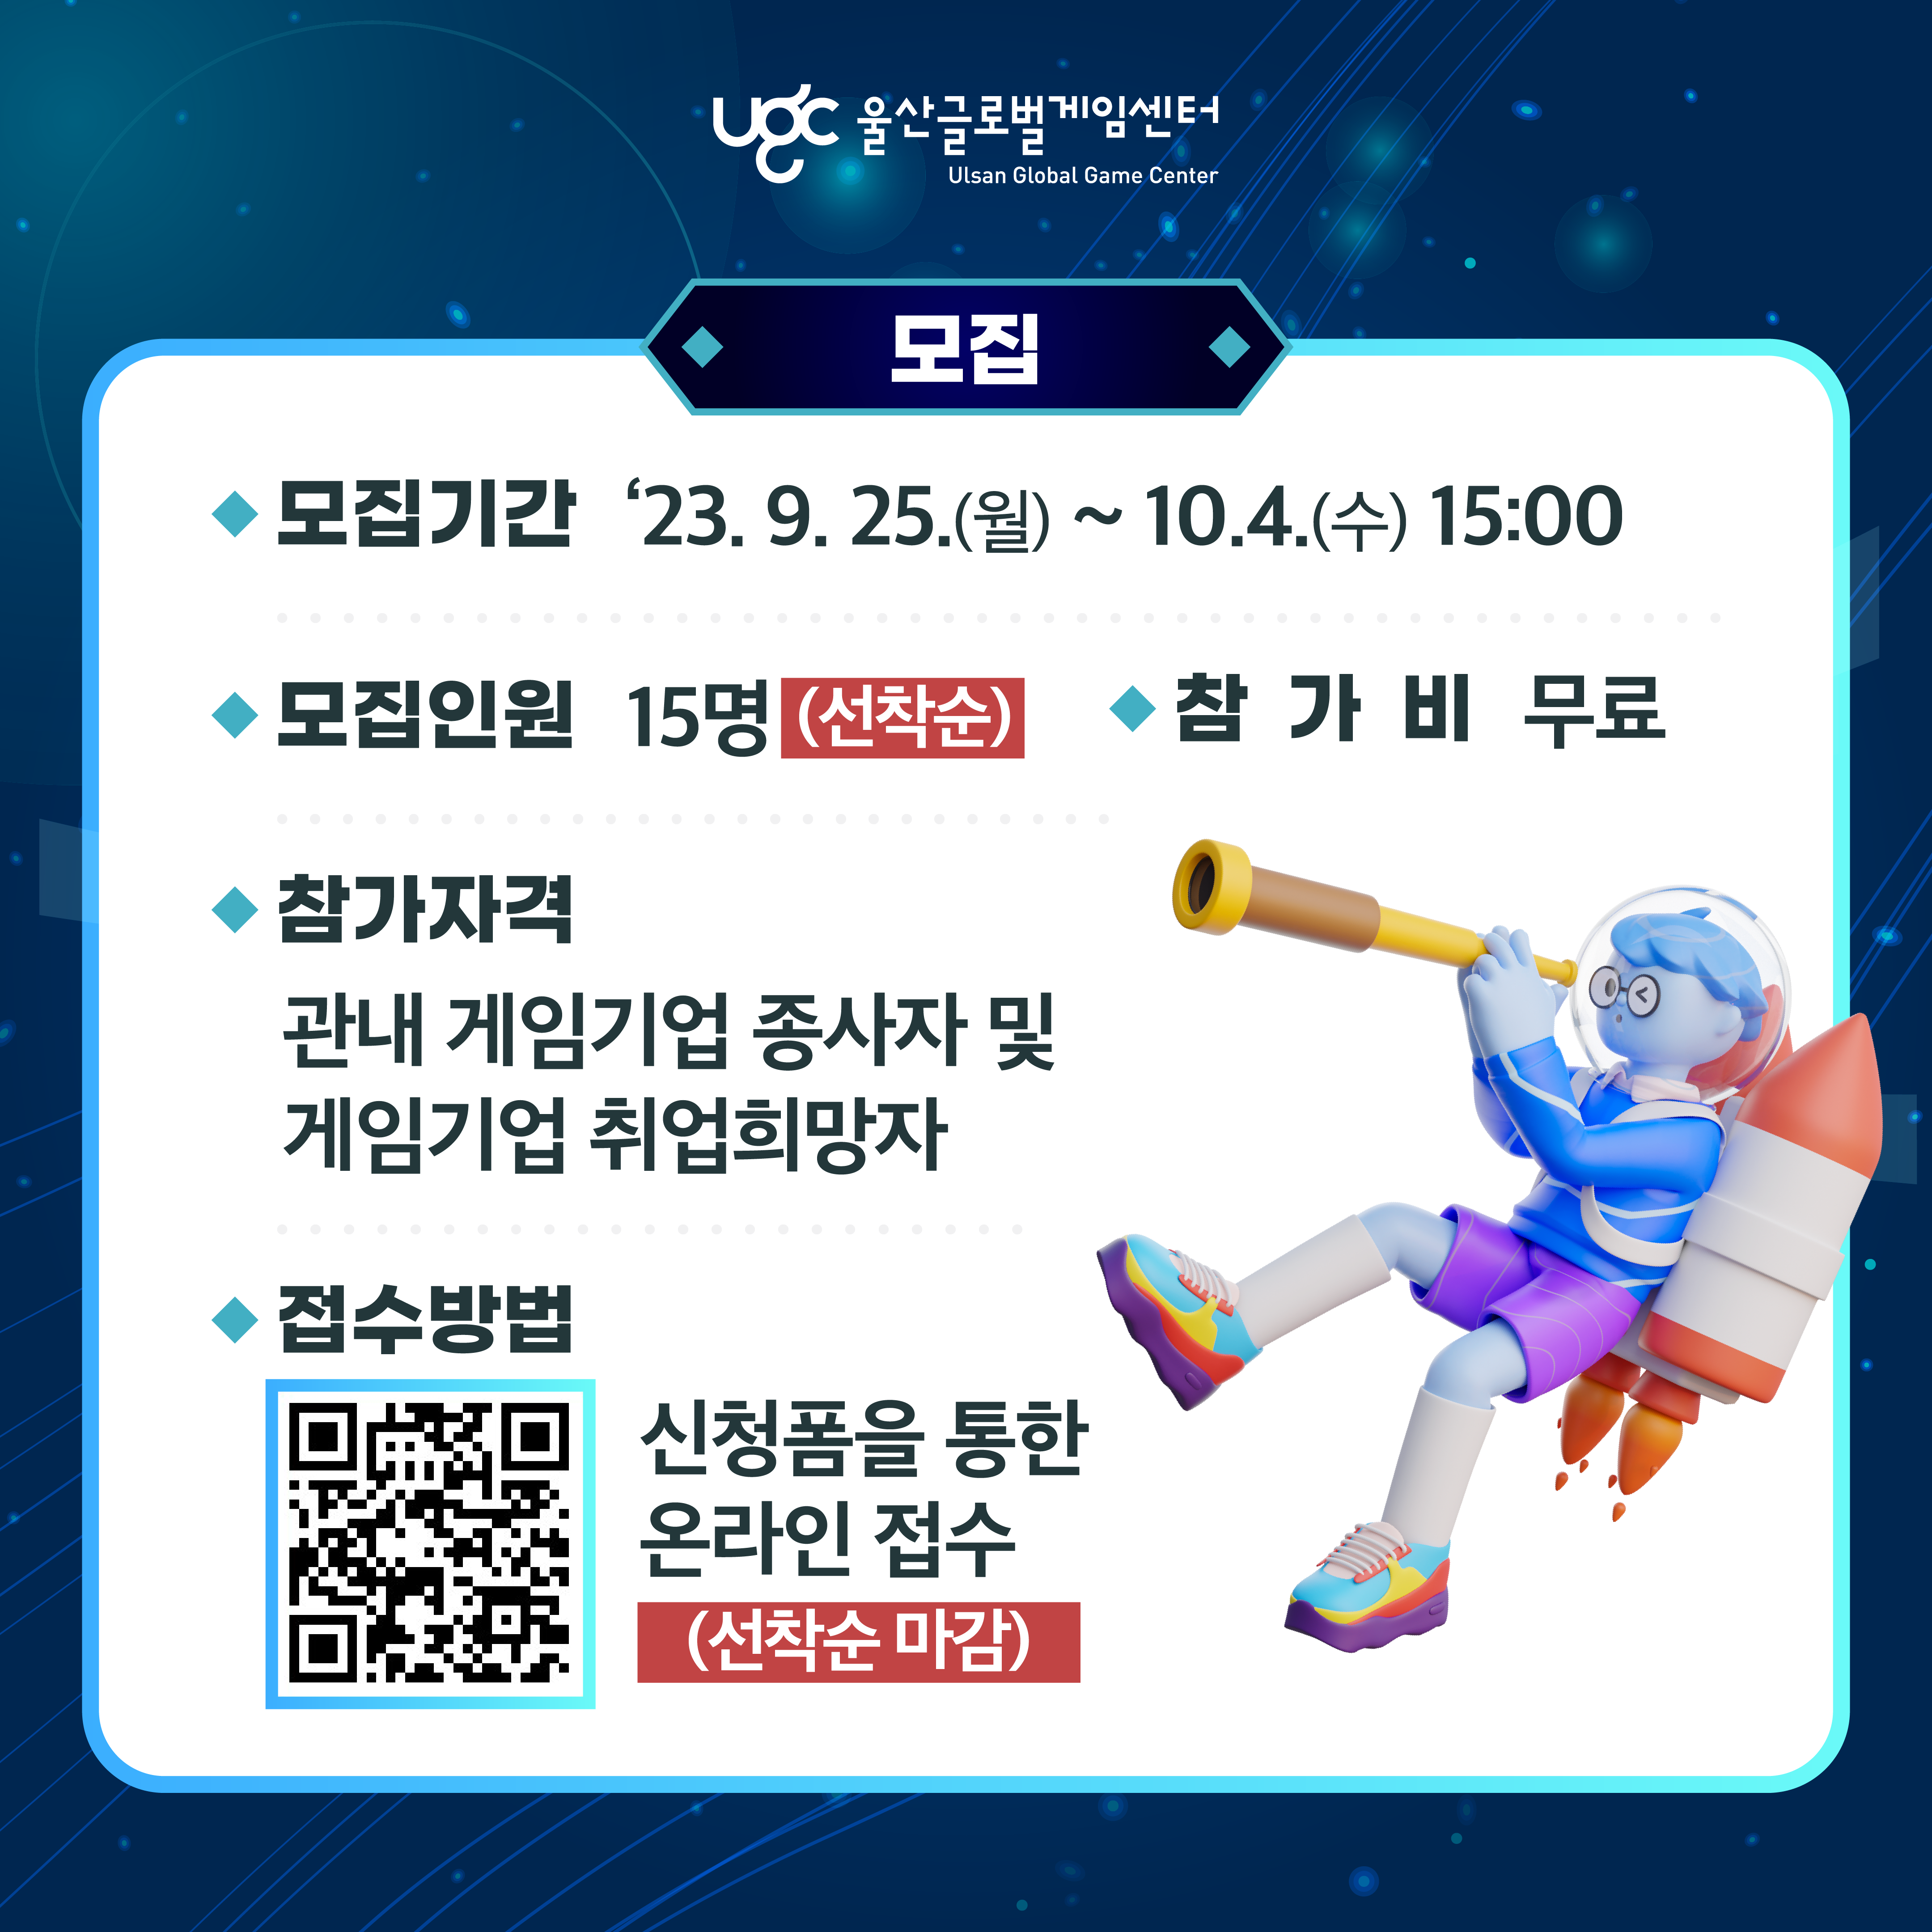 울산글로벌게임센터 Ulsan Global Game Center 모집 포스터로 자세한 내용은 아래 참조: